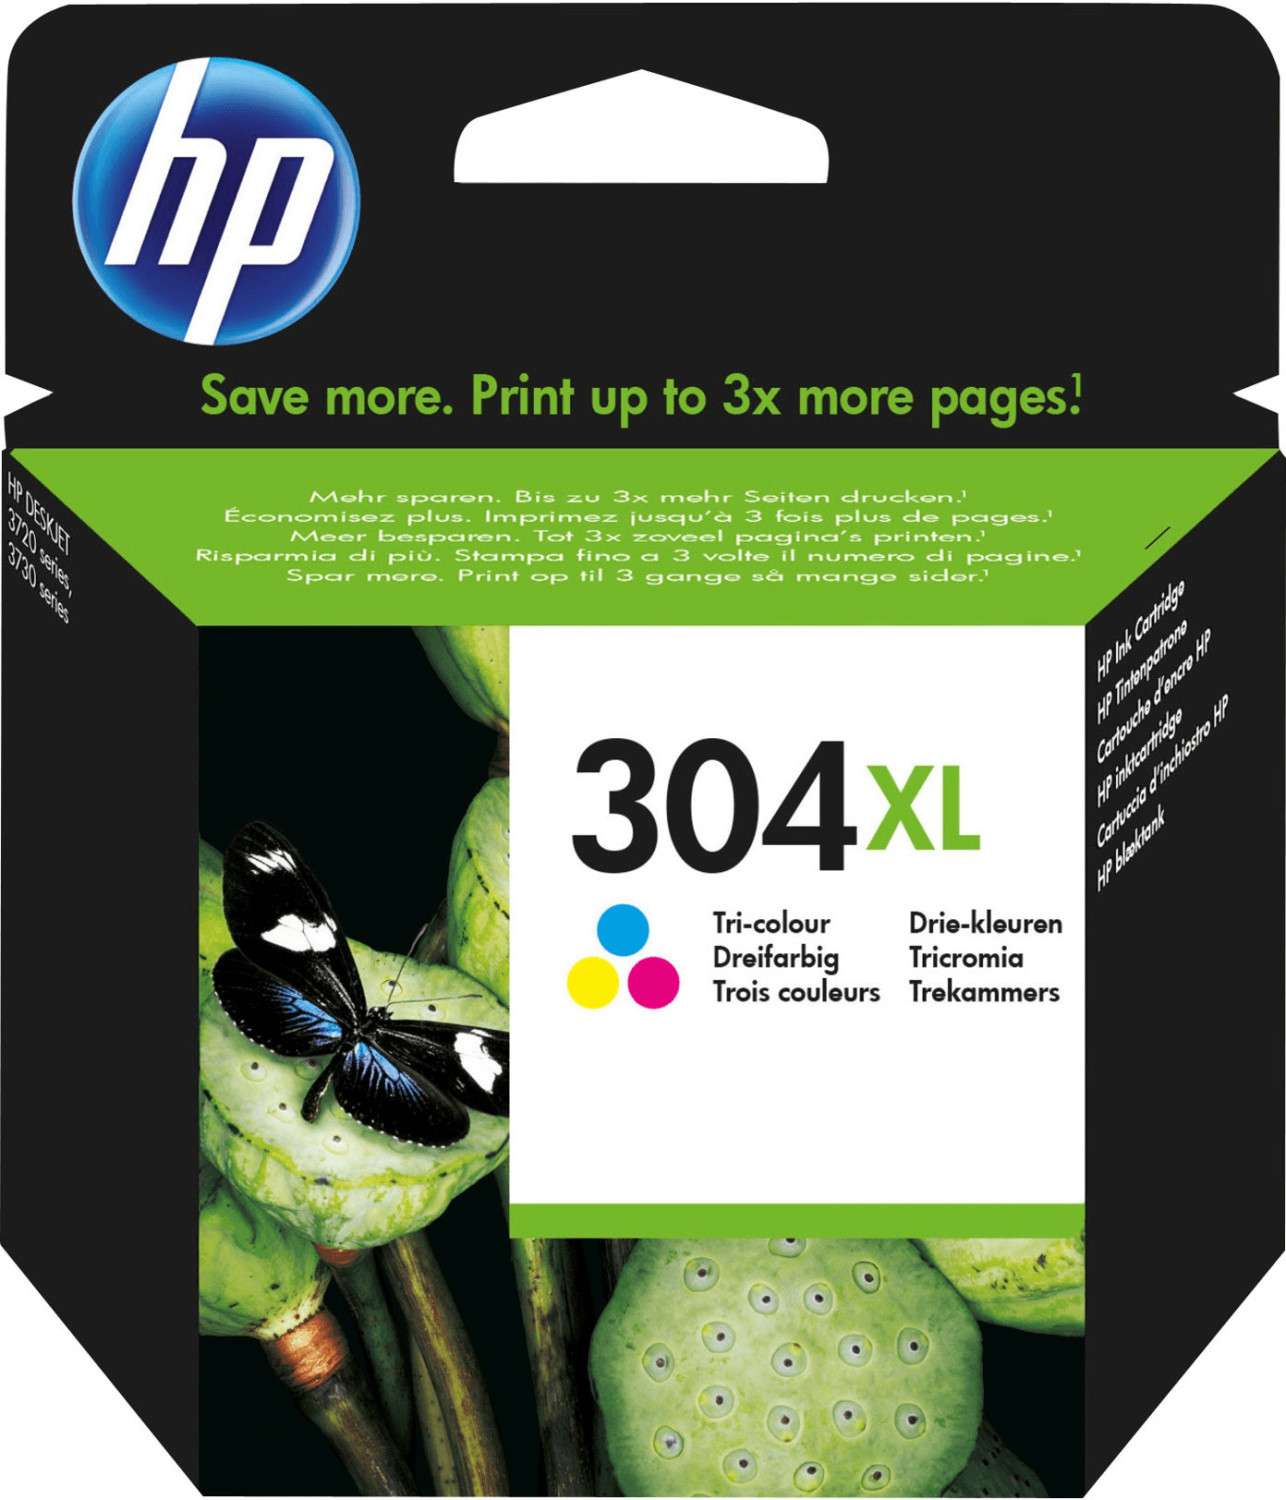 HP - HP 303XL Cartouche d'Encre Trois Couleurs grande capacité